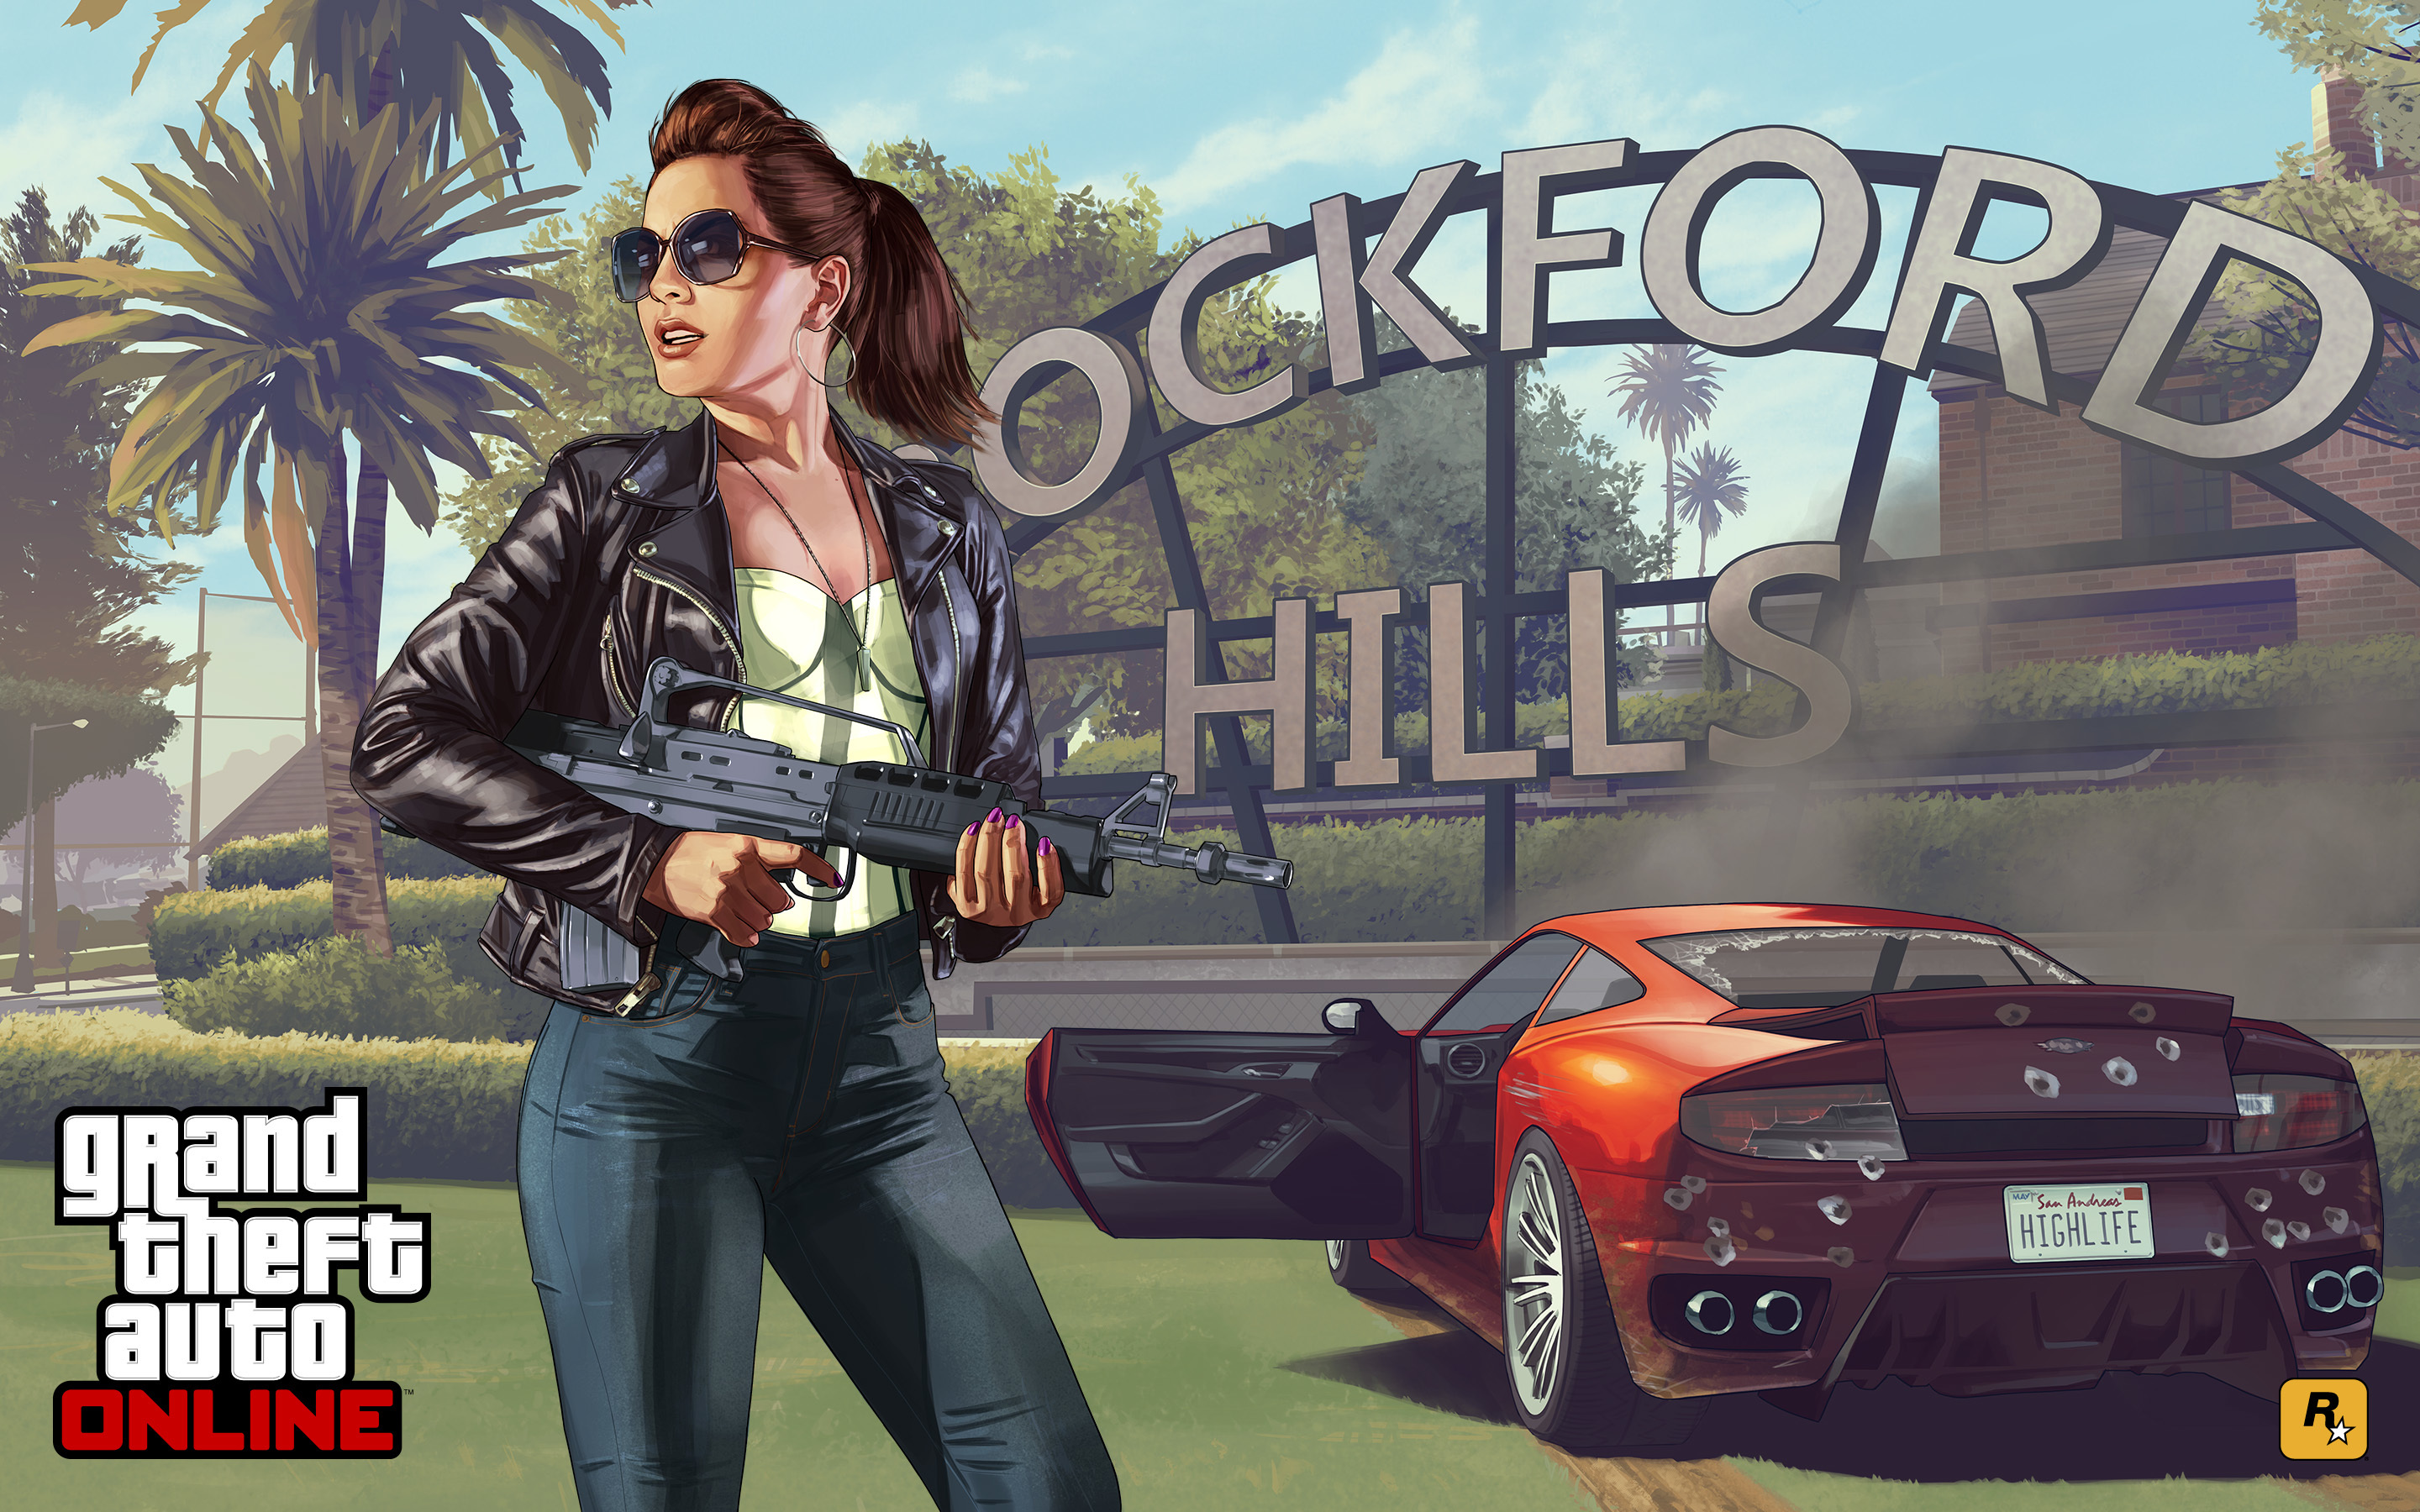 Wallpaper Grand Theft Auto V Gta Online Concept Art